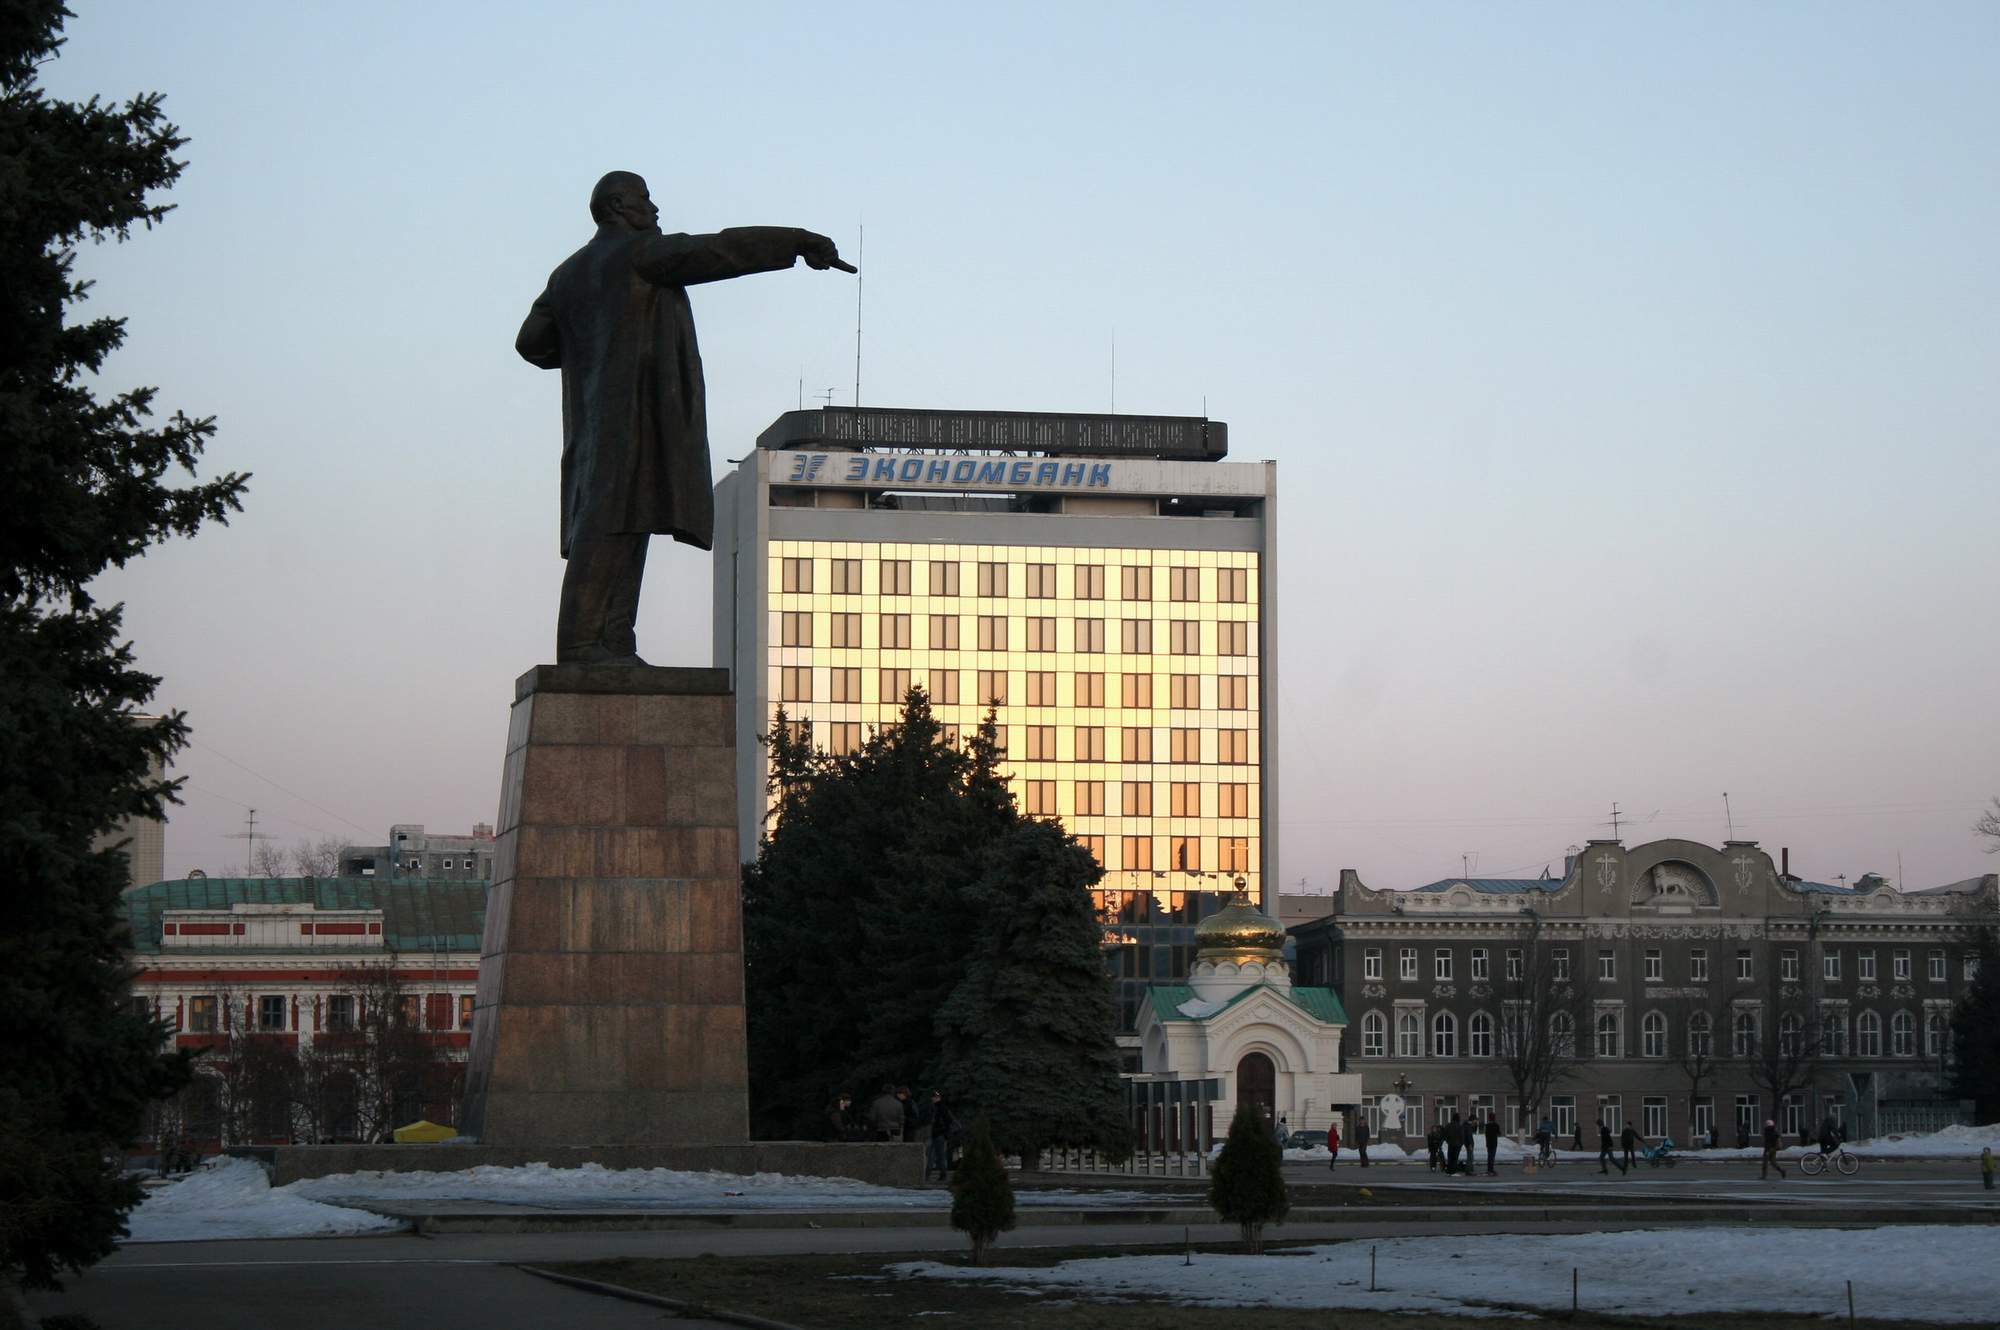 Саратовская площадь